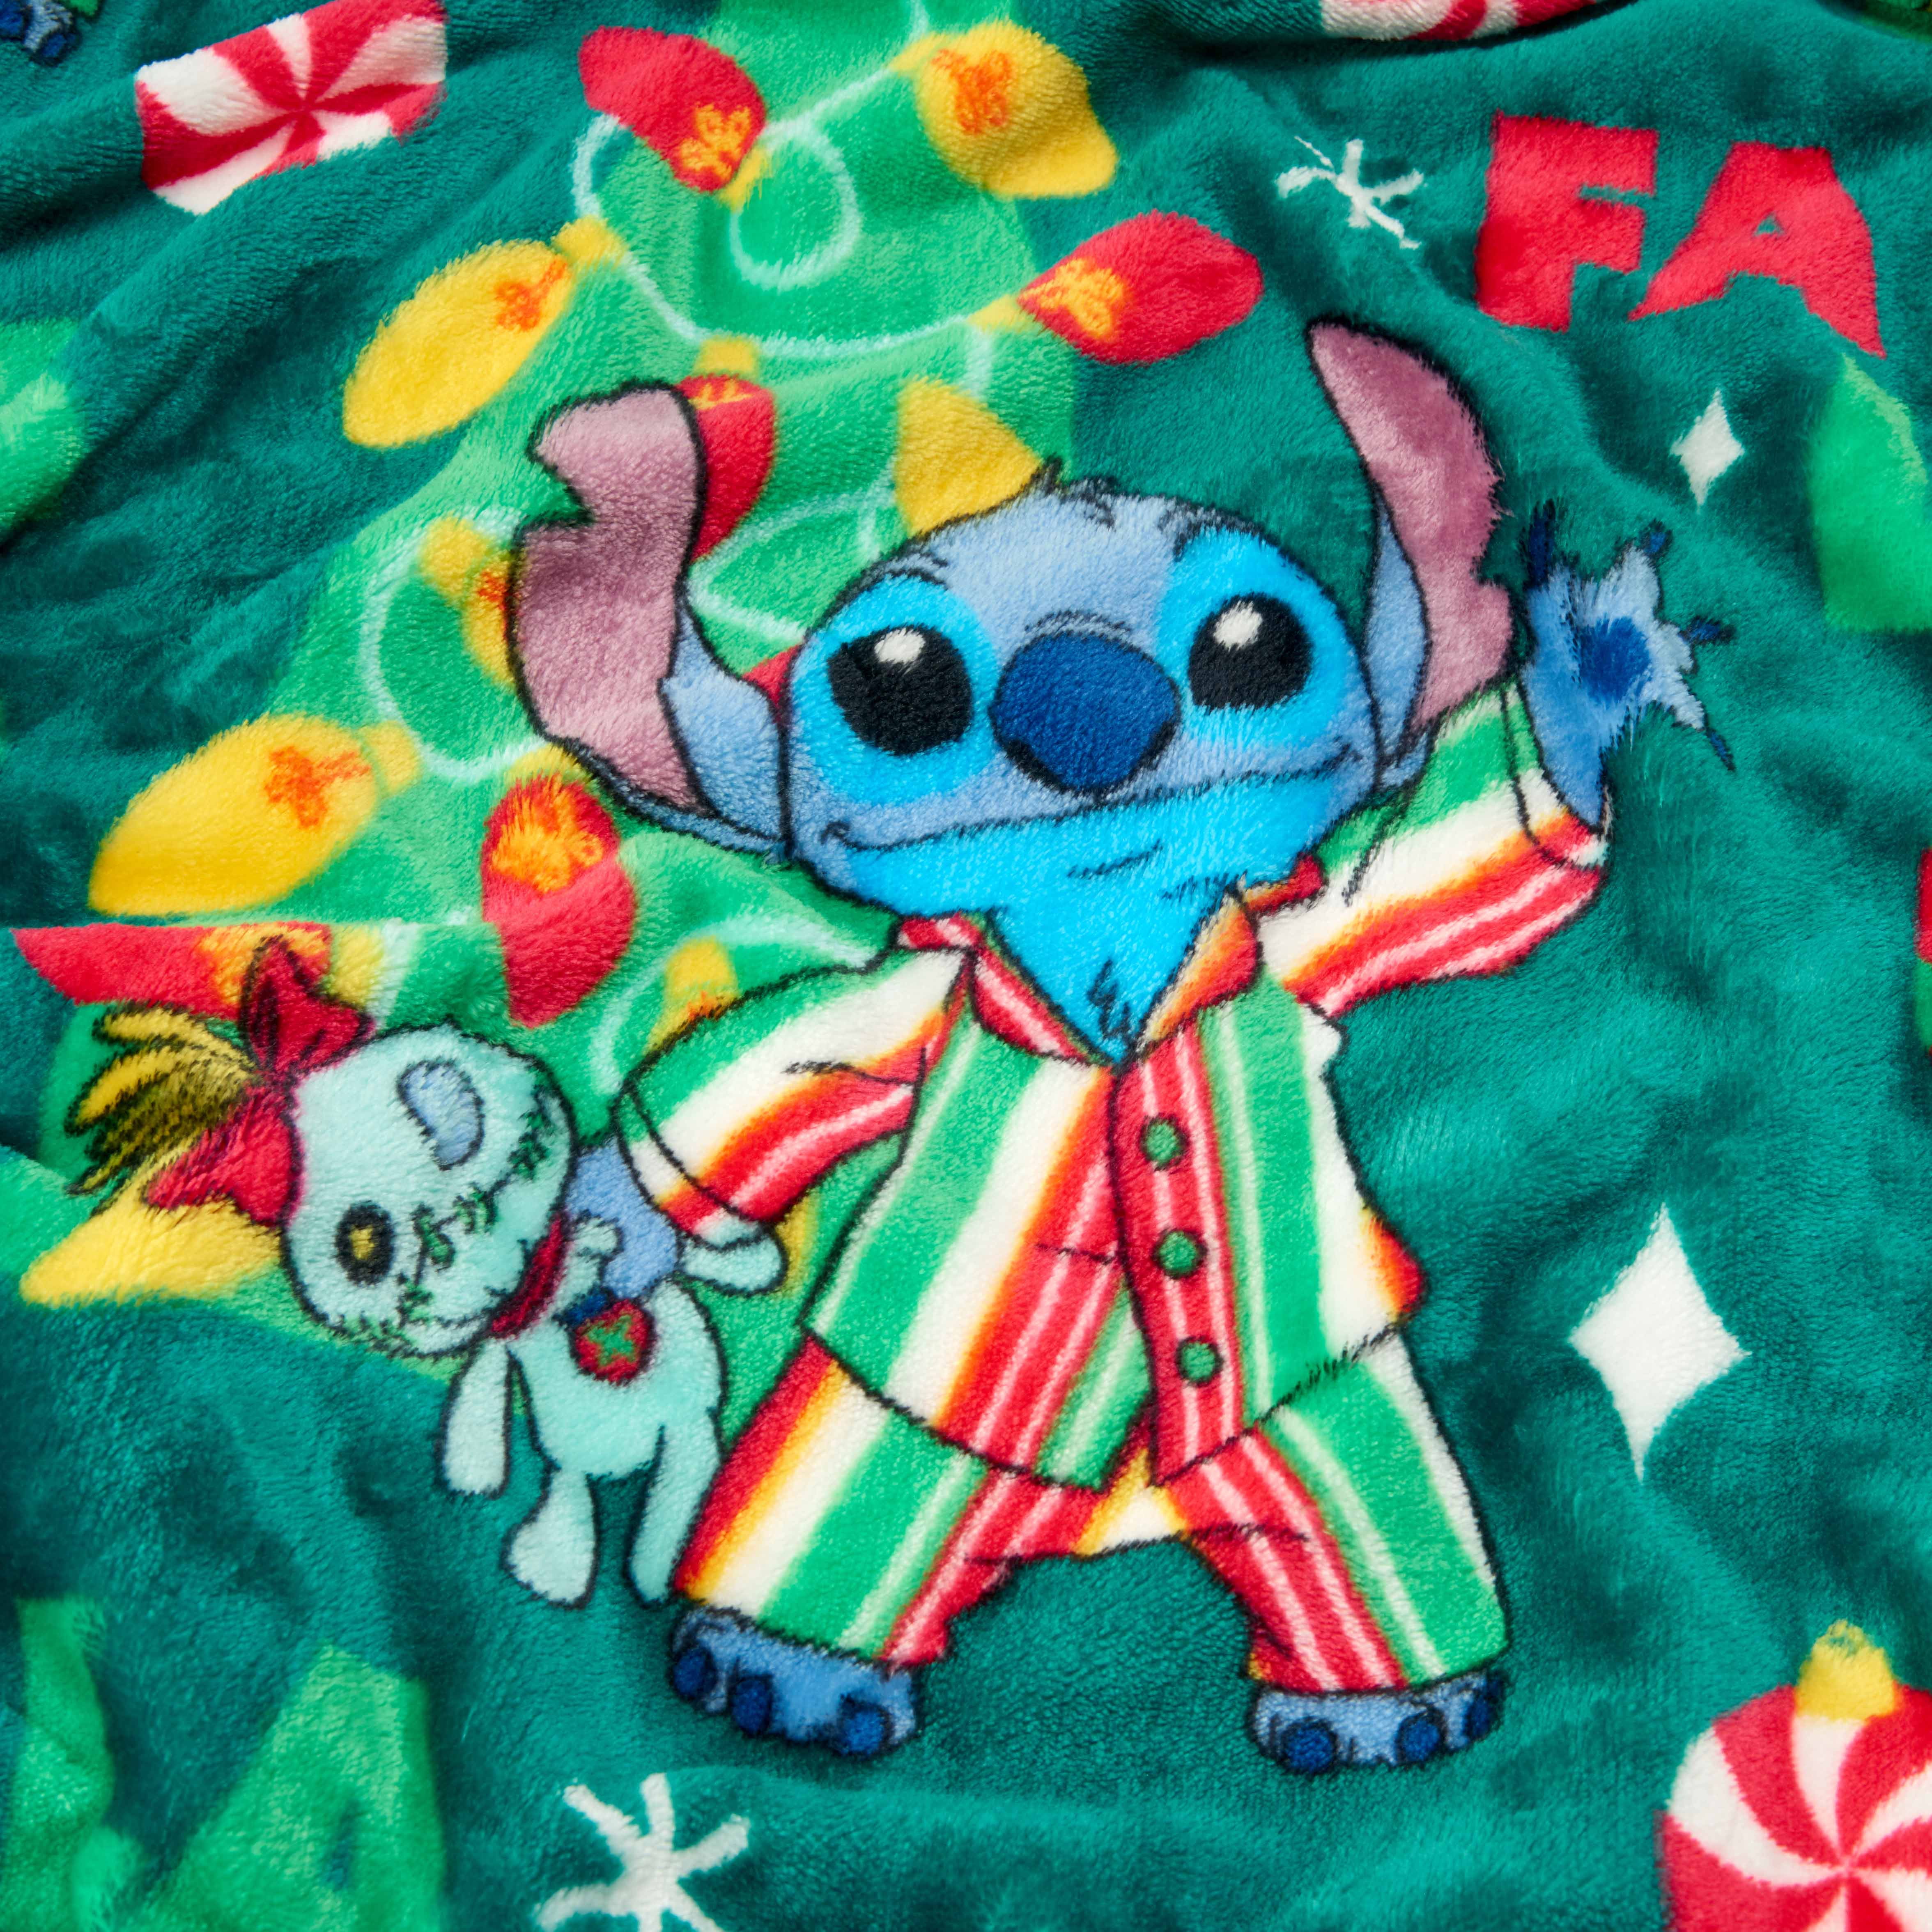 Lilo & Stitch PJ's Tradition Disney Silk Touch Throw Blanket, 50 x